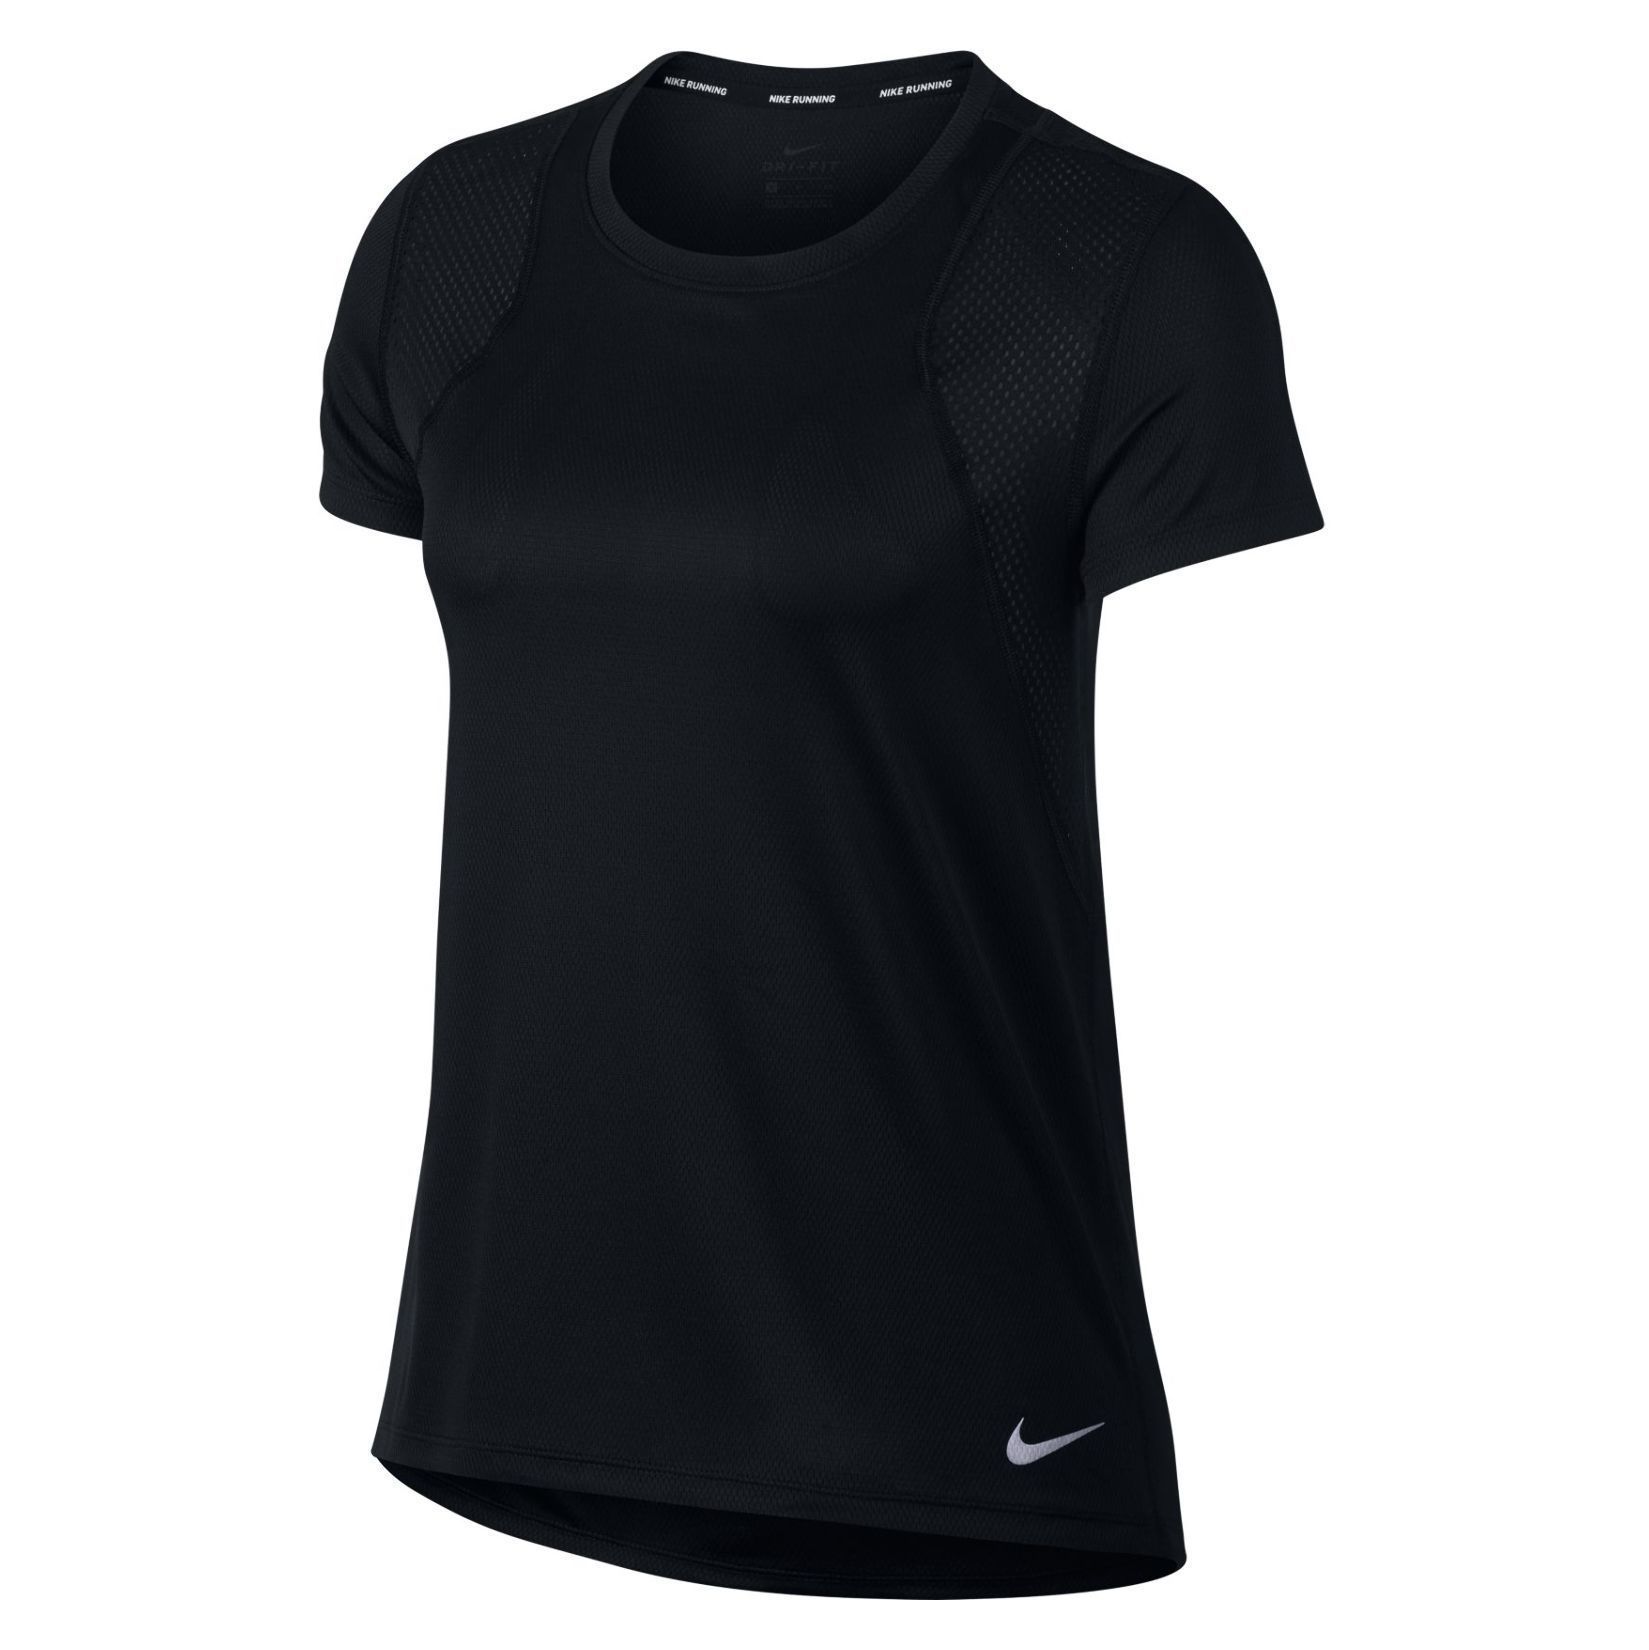 women's short sleeve running top